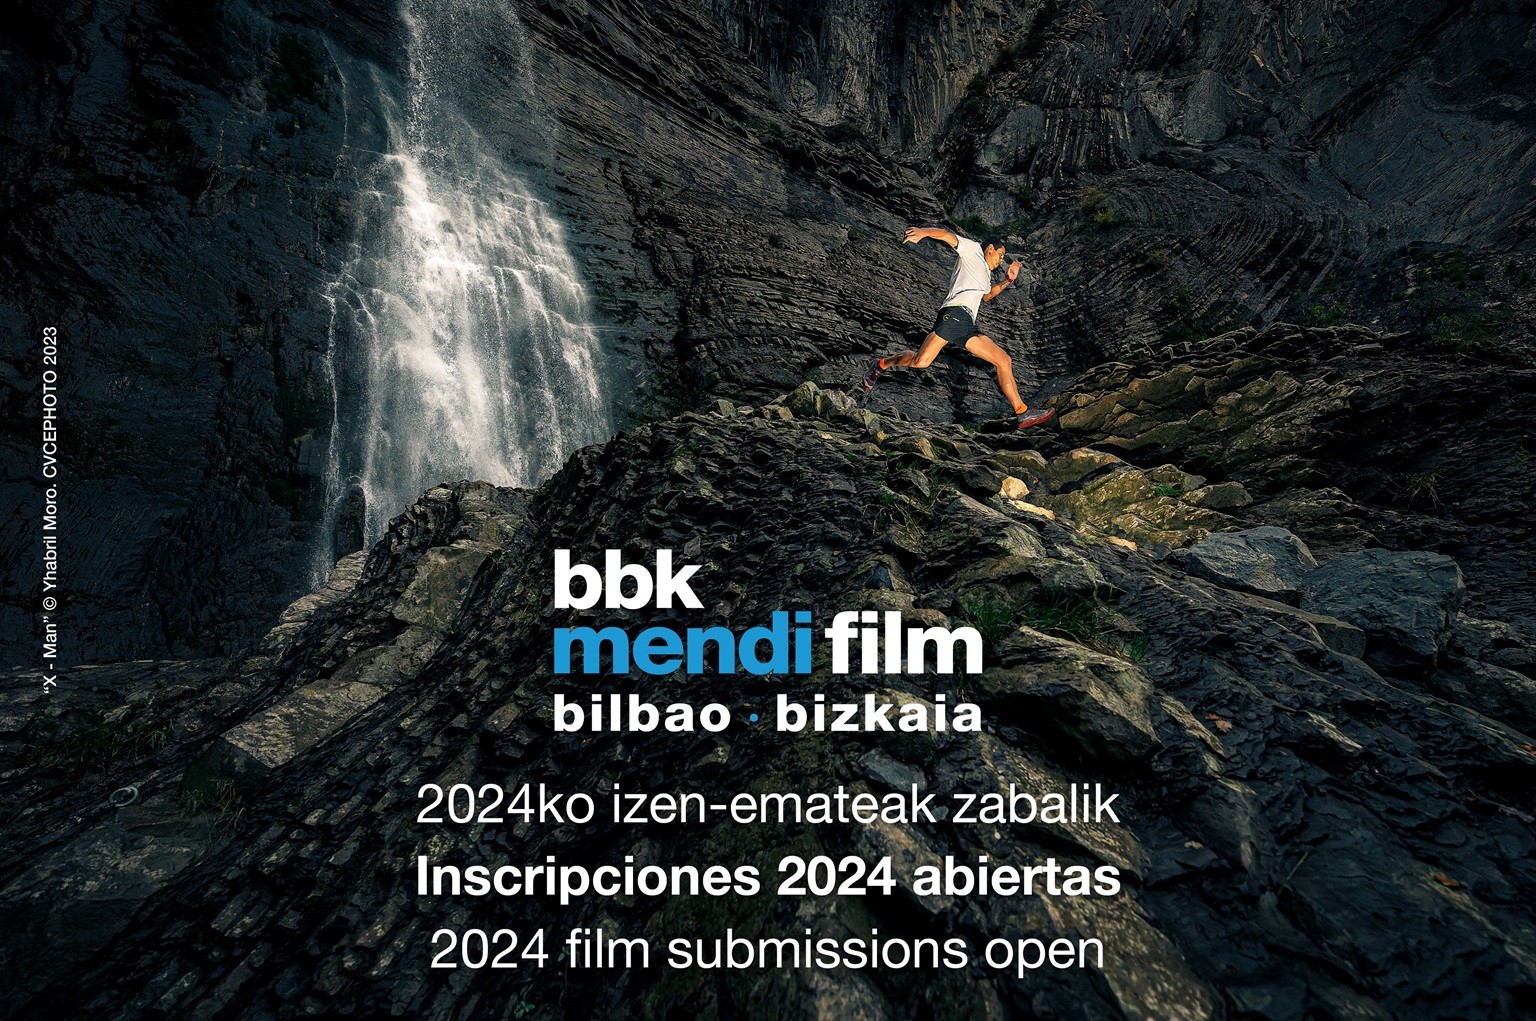 Abenduaren 6tik 15era egingo den BBK Mendi Film Bilbao-Bizkaia jaialdiaren 17. ediziorako pelikulak erregistratzeko epea zabalik